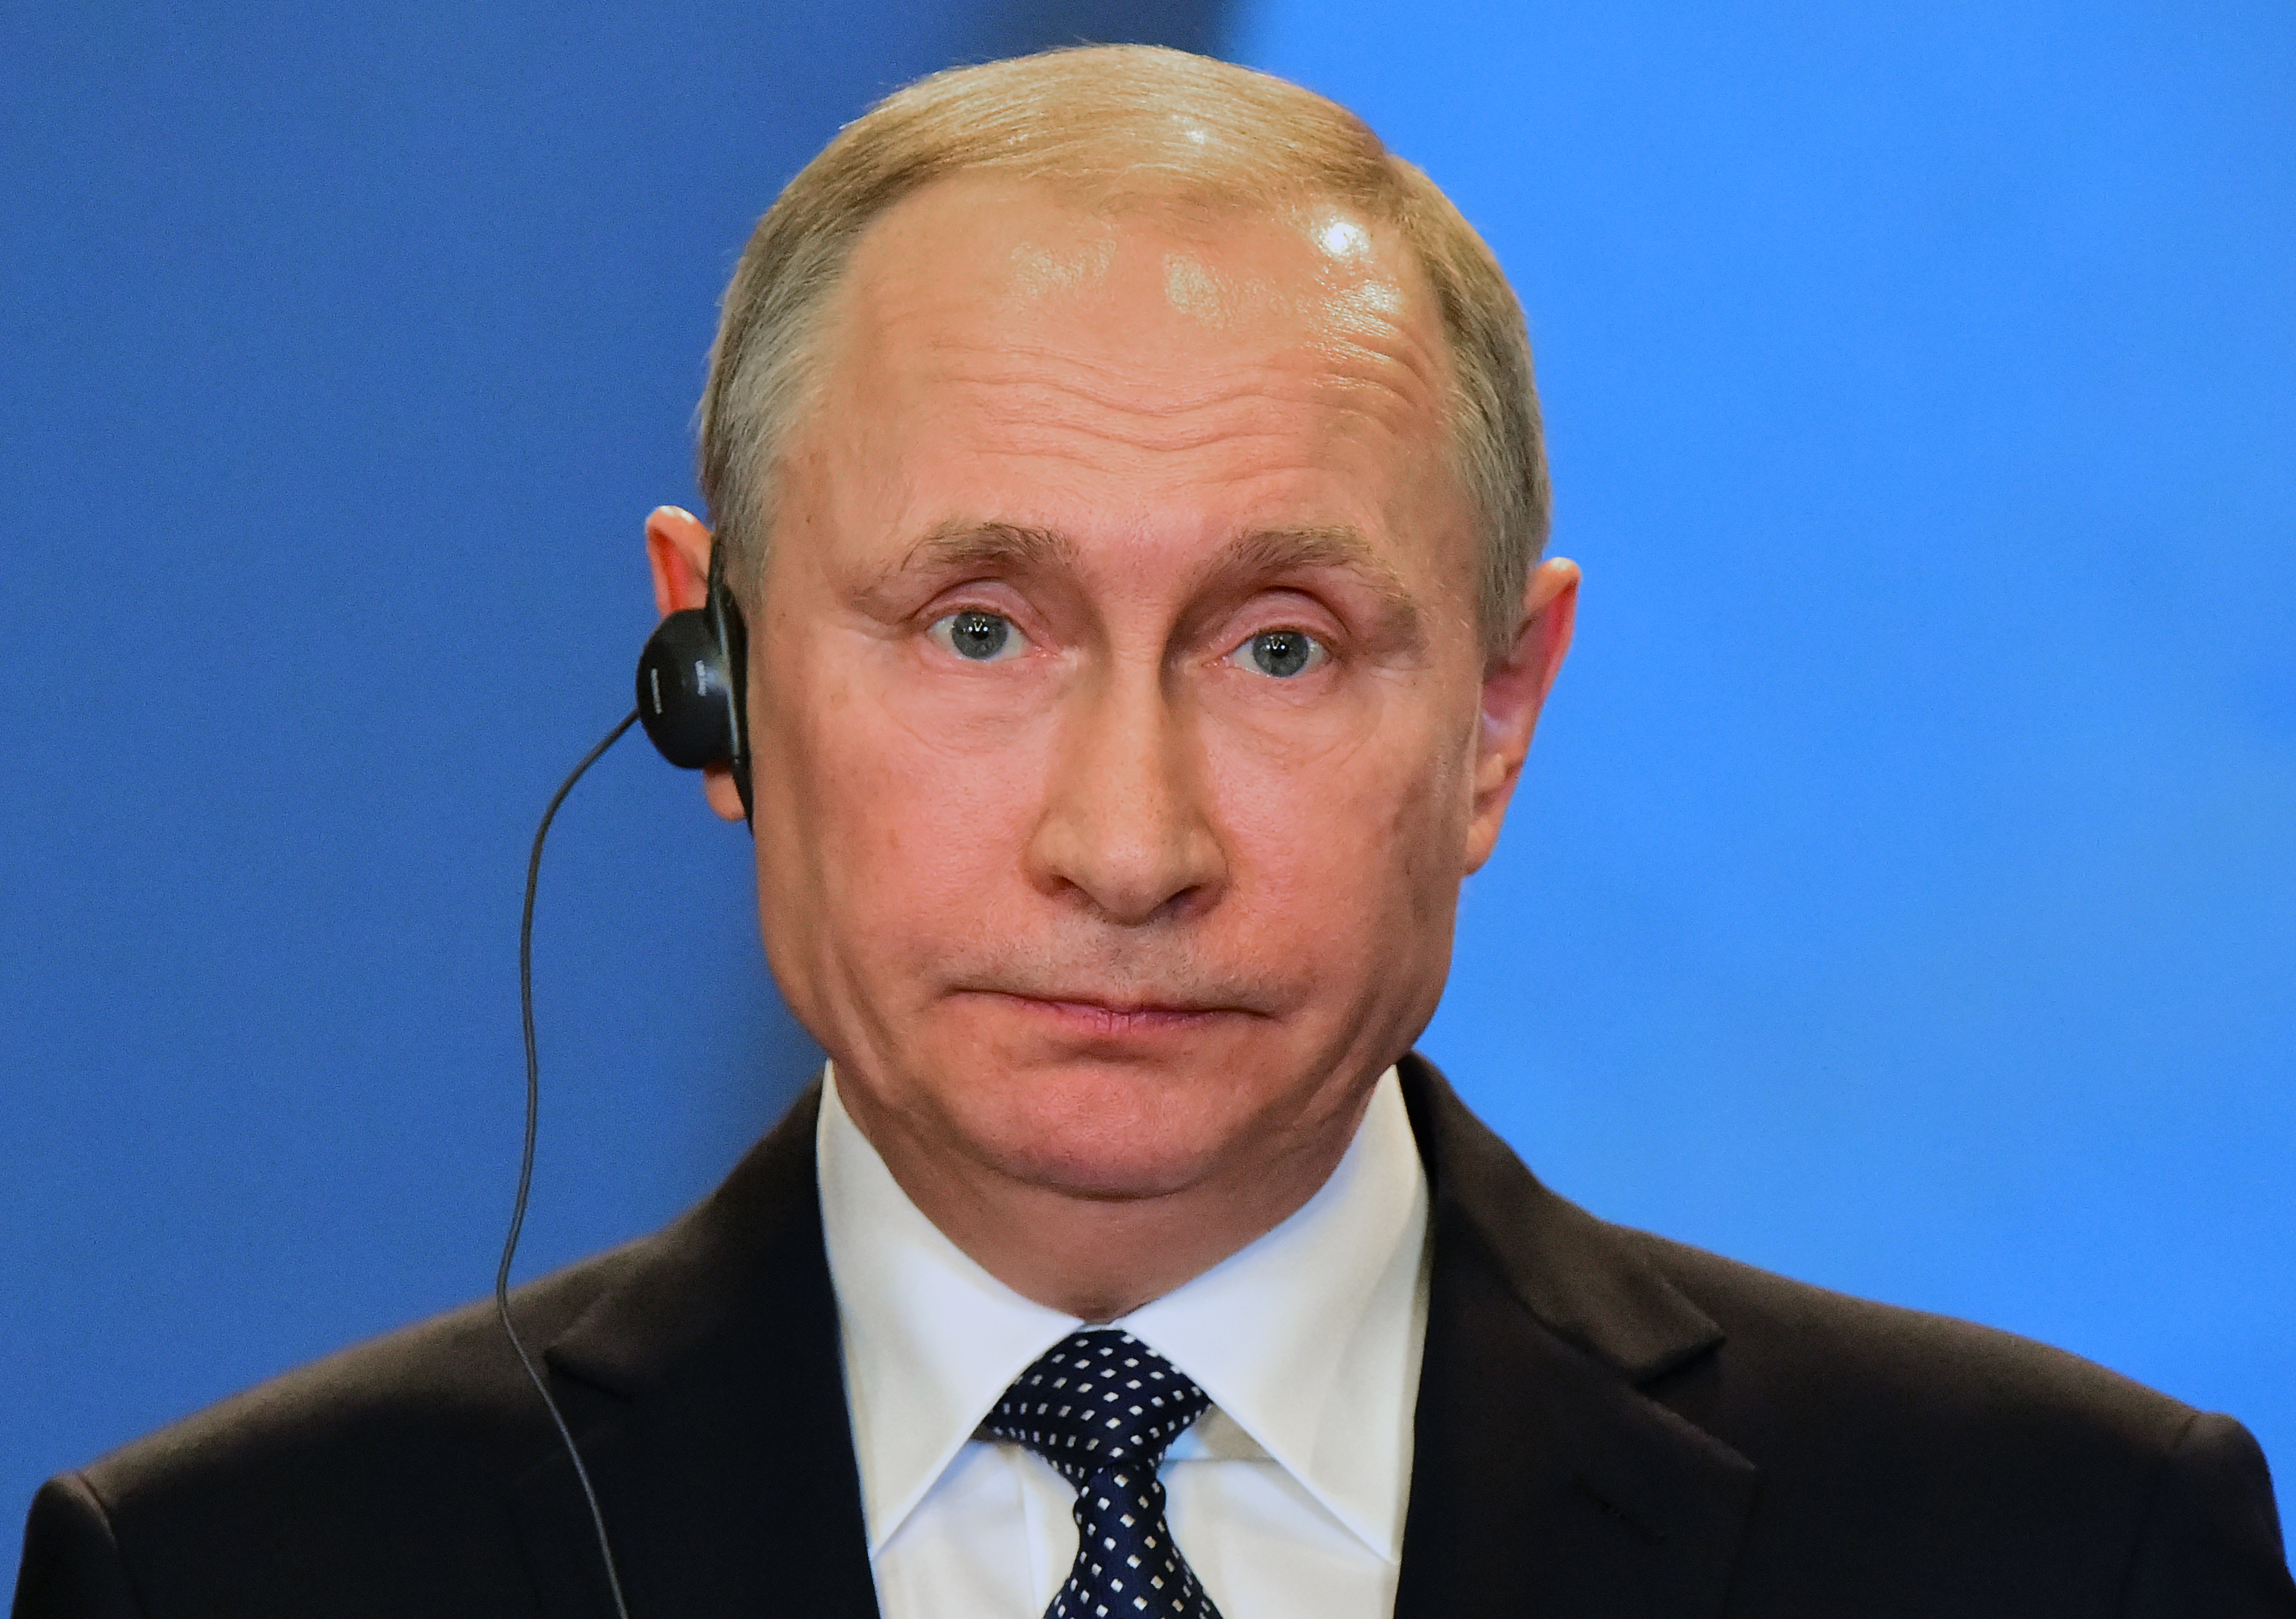 Putyin: Lehet, hogy patrióta gondolkodású orosz magánemberek törték fel a demokraták levelezését